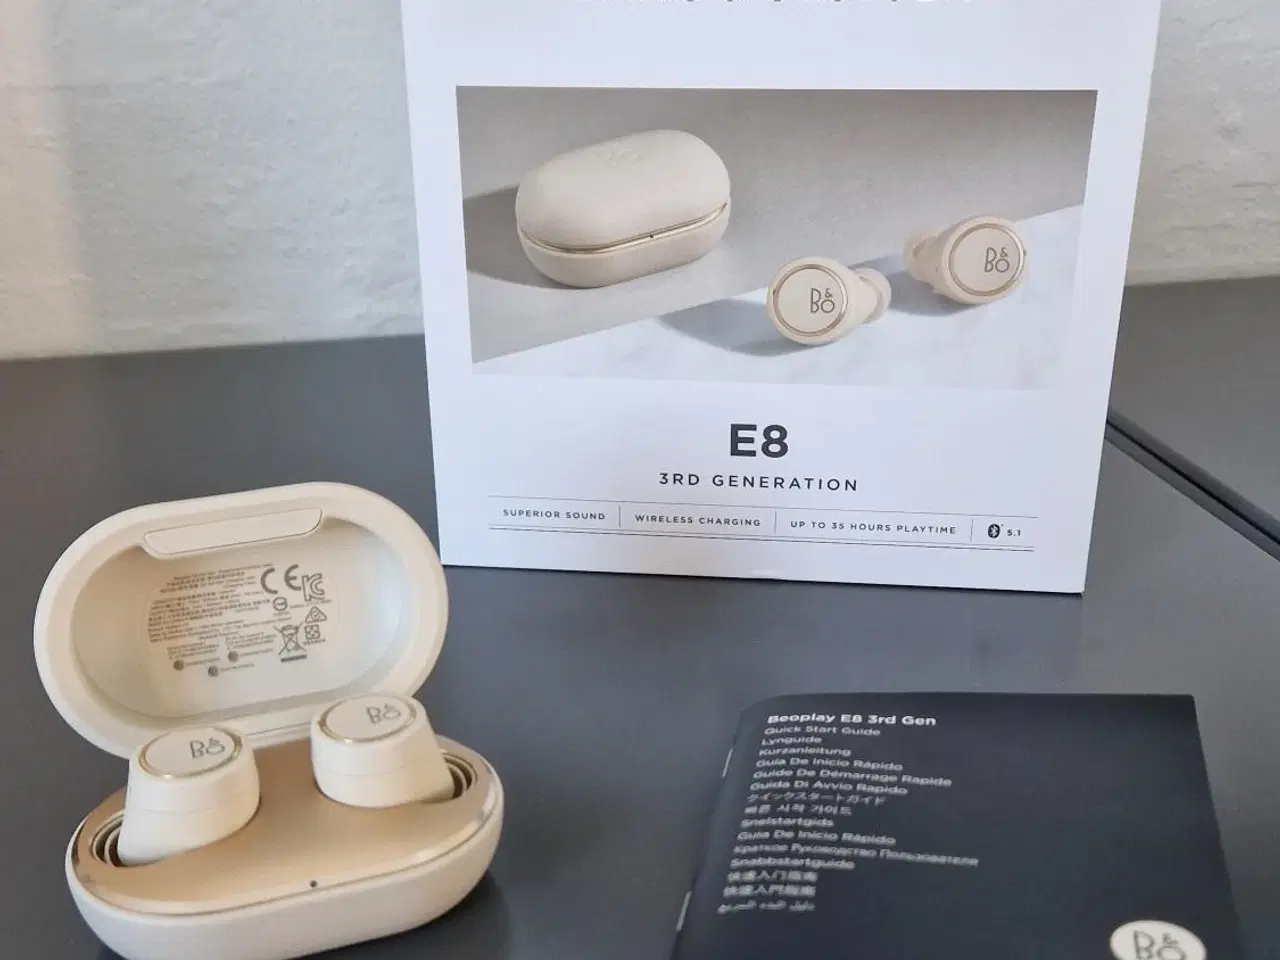 Billede 2 - 2 sæt B&O E8 3rd generation øretelefoner sælges. 